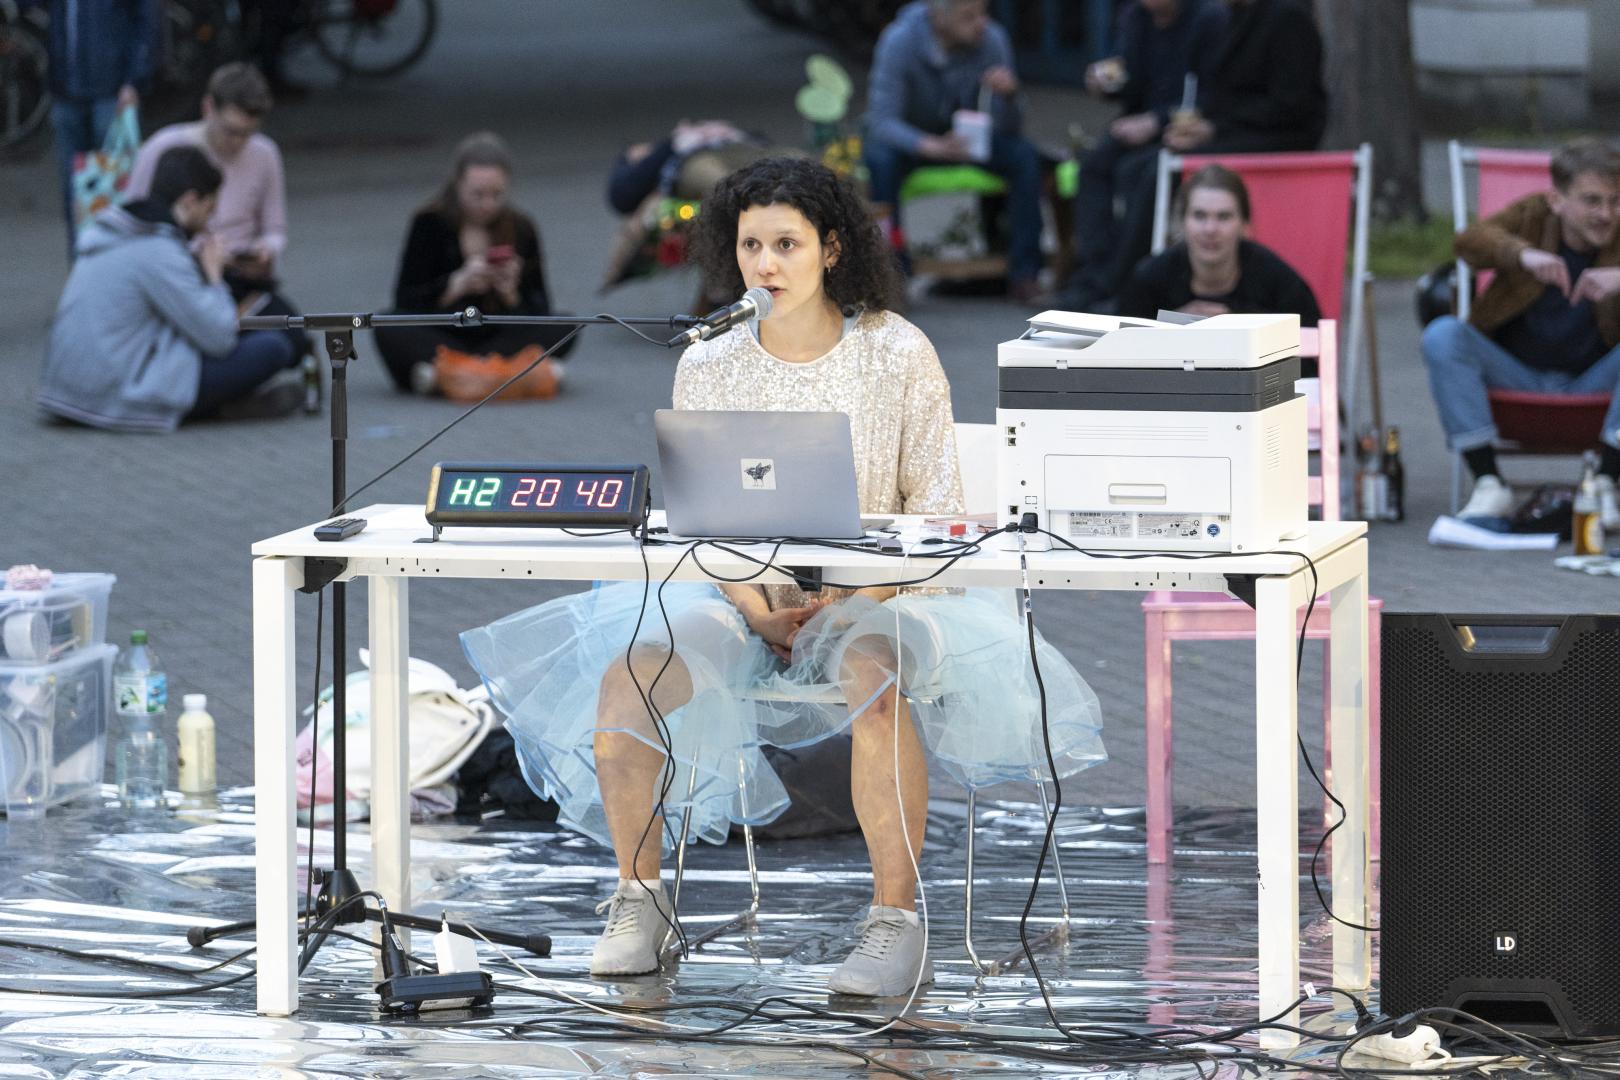 Szene aus einer Performance im Innenhof der HfMDK: Eine Darstellerin sitzt vor einem Laptop an einem Tisch und spricht ins Mikrofon